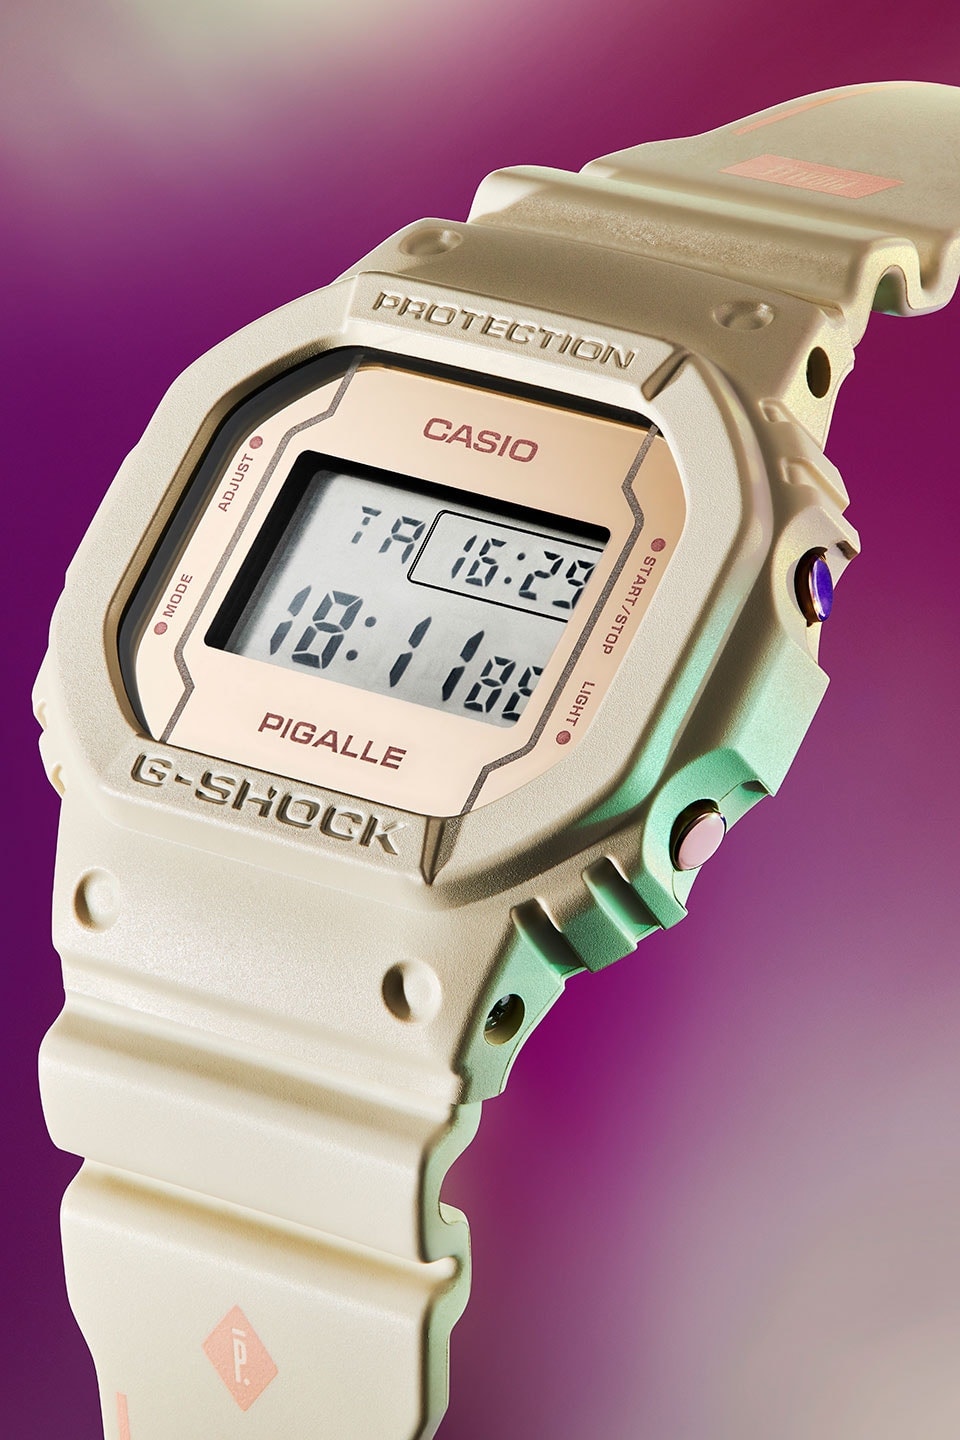 Pigalle x Casio G-SHOCK 聯名 DW-5600 腕錶系列